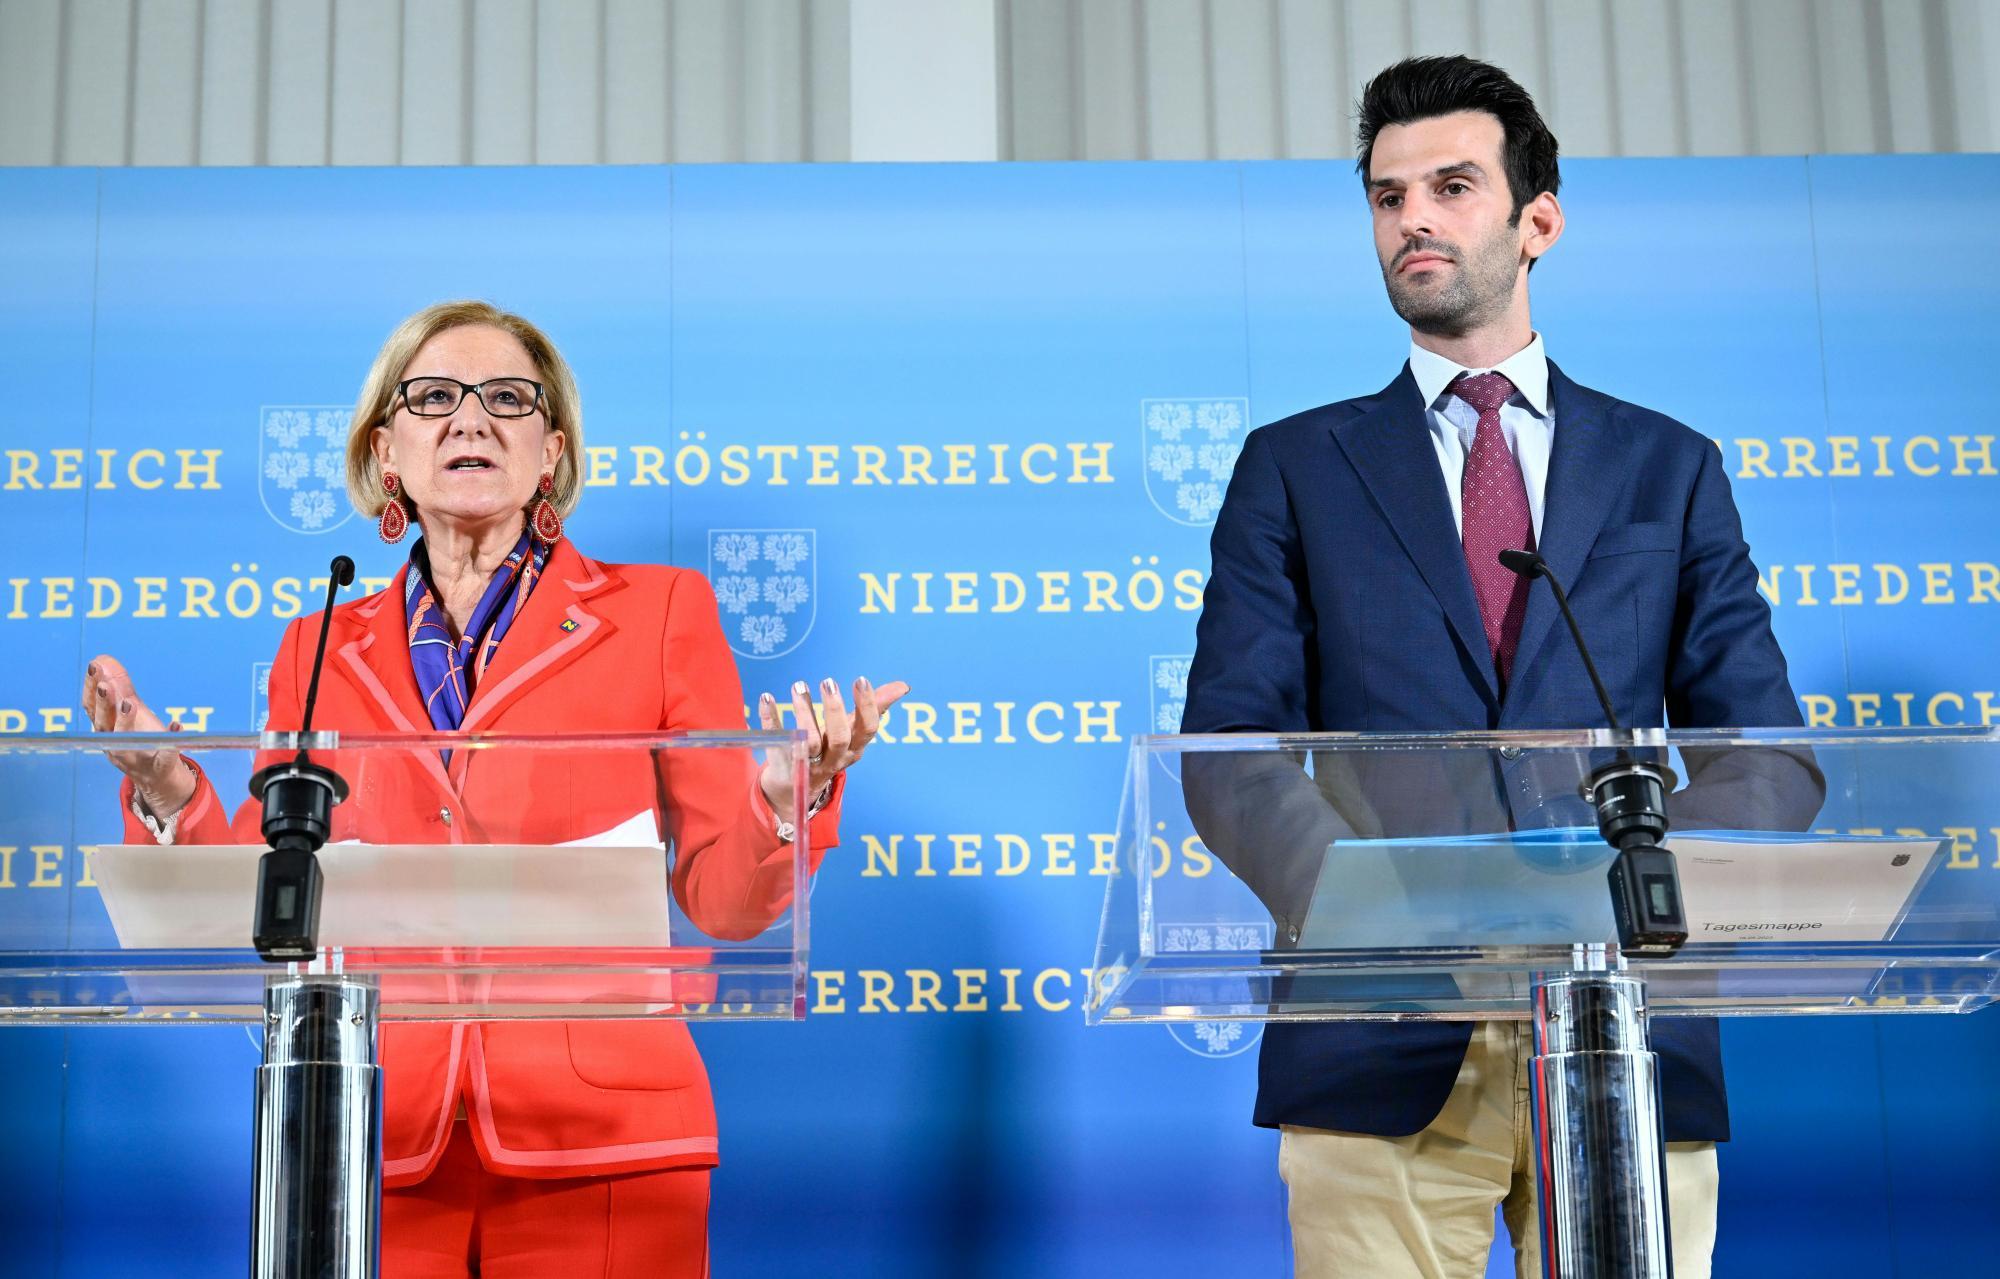 Landeshauptfrau Johanna Mikl-Leitner (ÖVP) und Landeshauptfrau-Stellvertreter Udo Landbauer (FPÖ) verbieten den niederösterreichischen Beamtinnen und Beamten das Gendern.